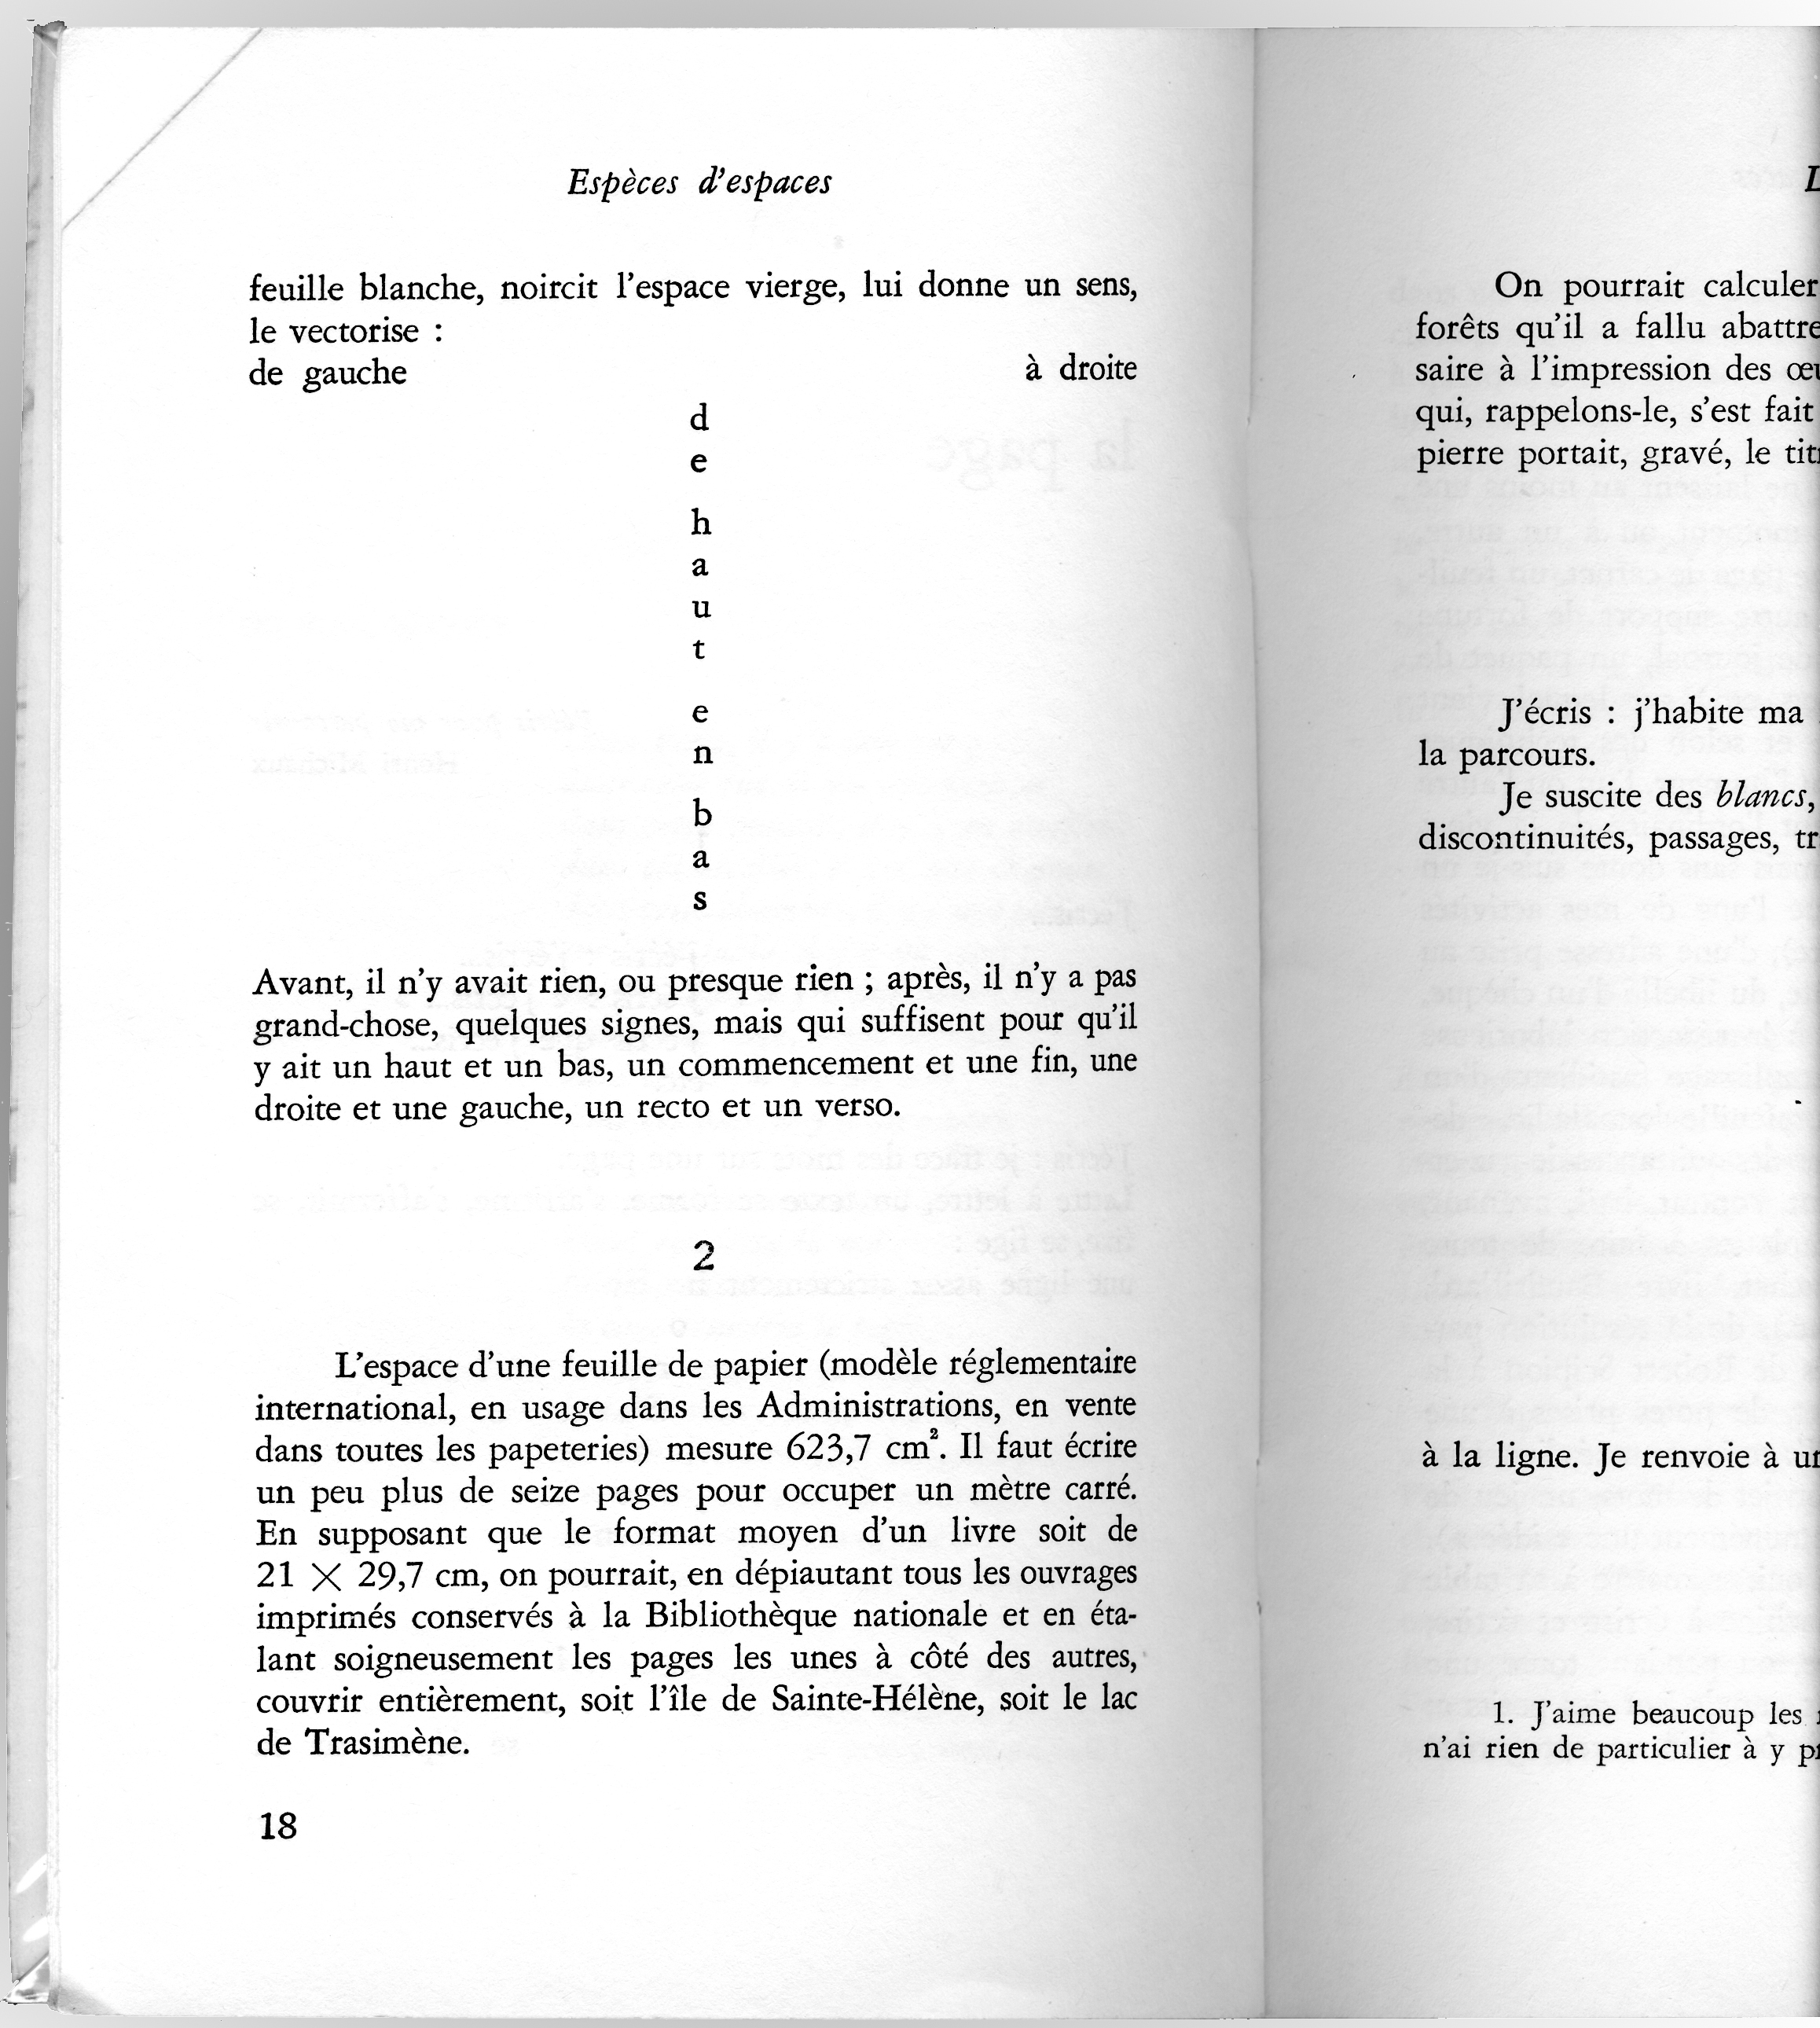 Georges Perce, Espèces d’espaces, Galiléen Paris, 1974, p. 18